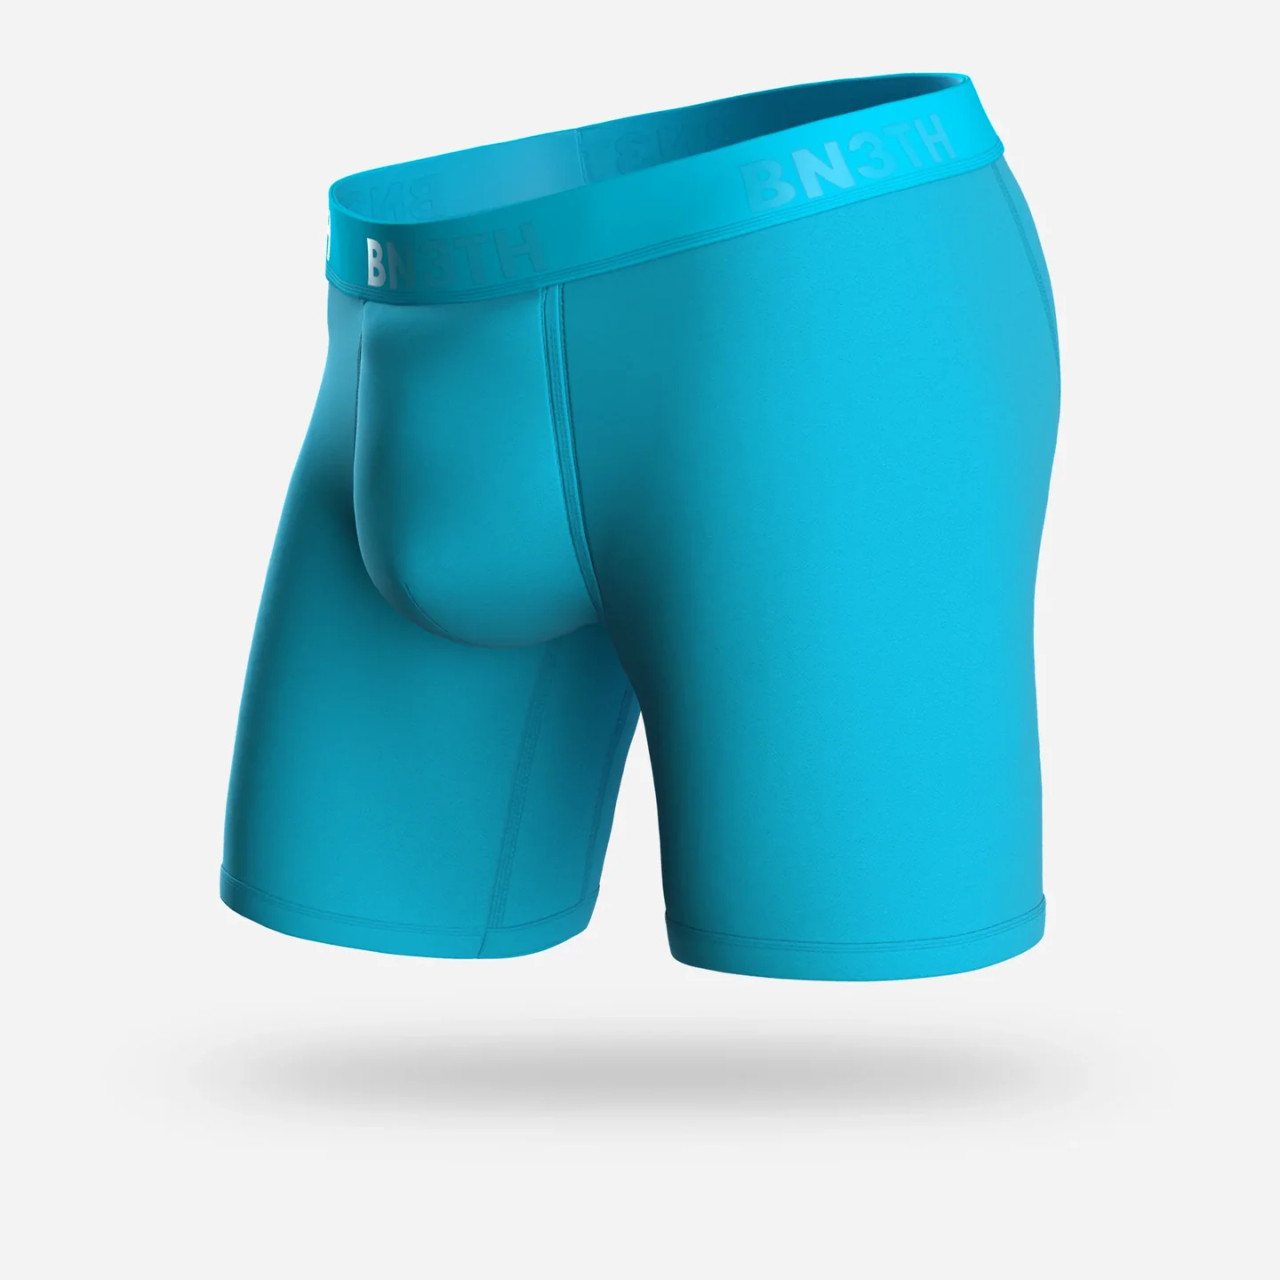 Bn3th Underwear, Pouch Boxers